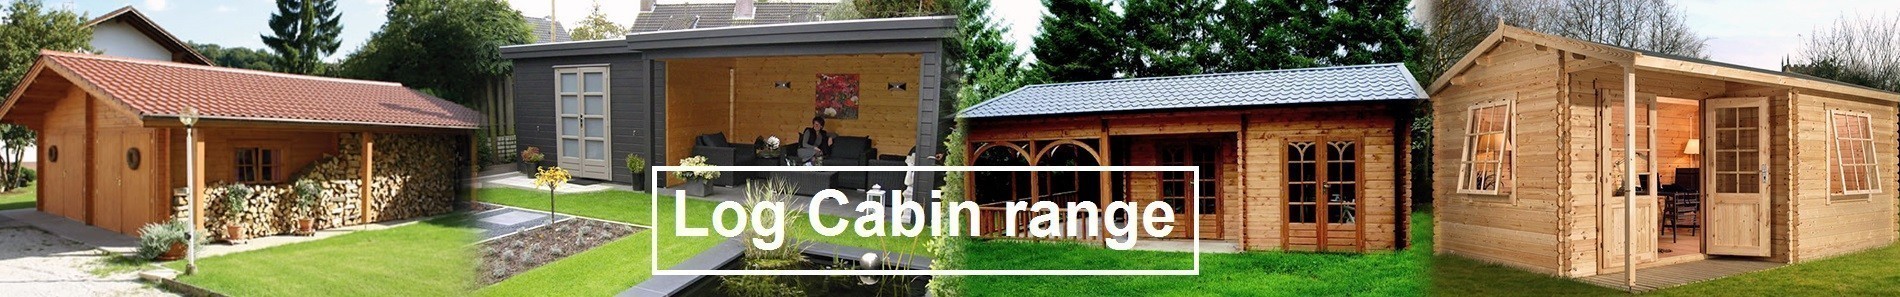 Log Cabin; log cabin summerhouse